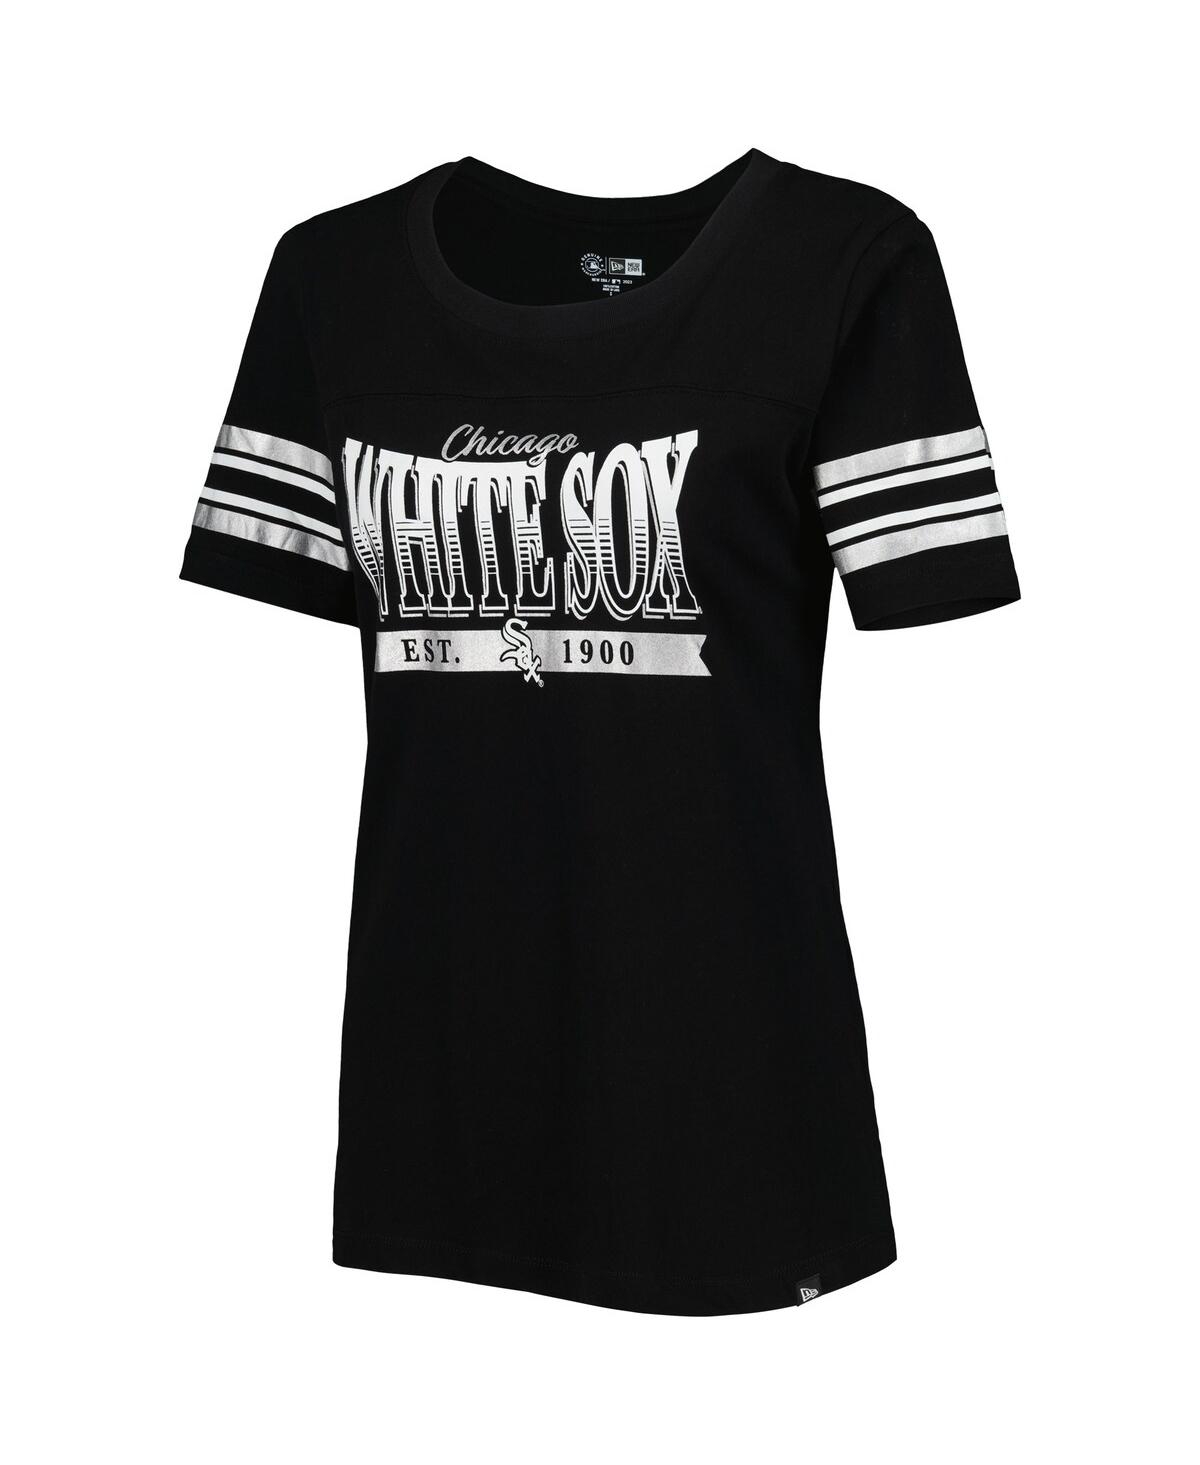 Shop New Era Women's  Black Chicago White Sox Team Stripe T-shirt